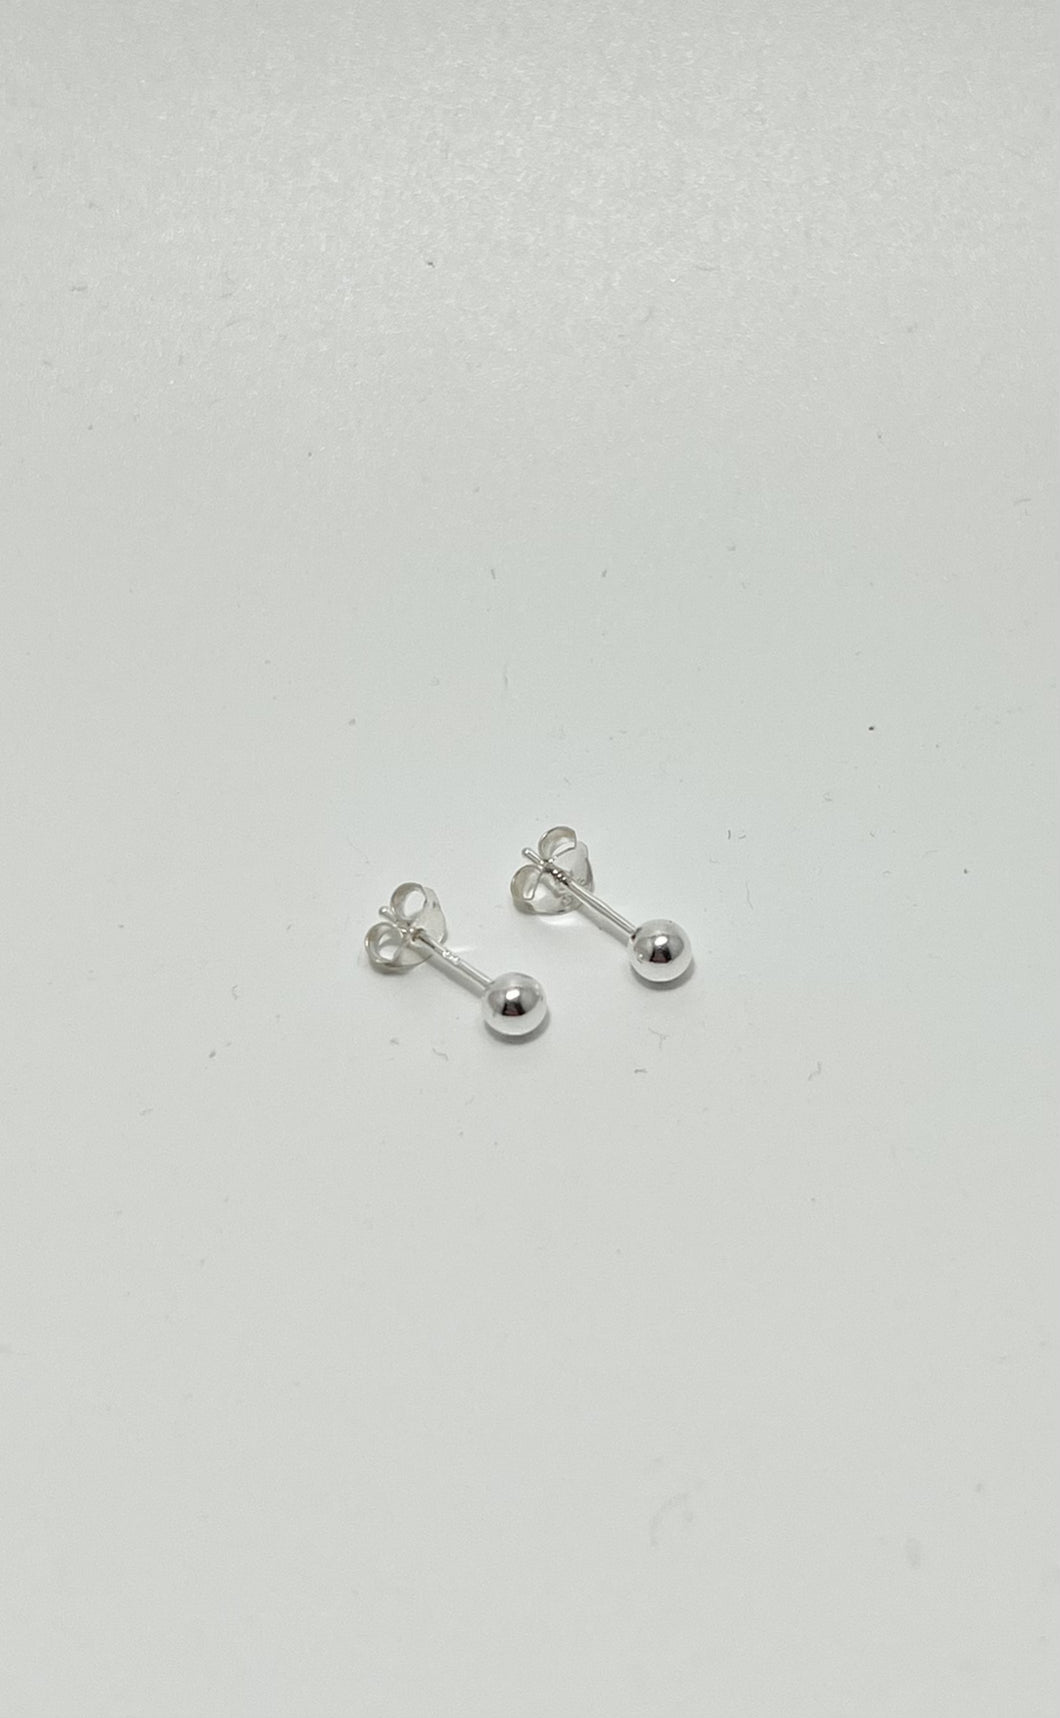 3mm Sterling Silver Ball Stud Earrings